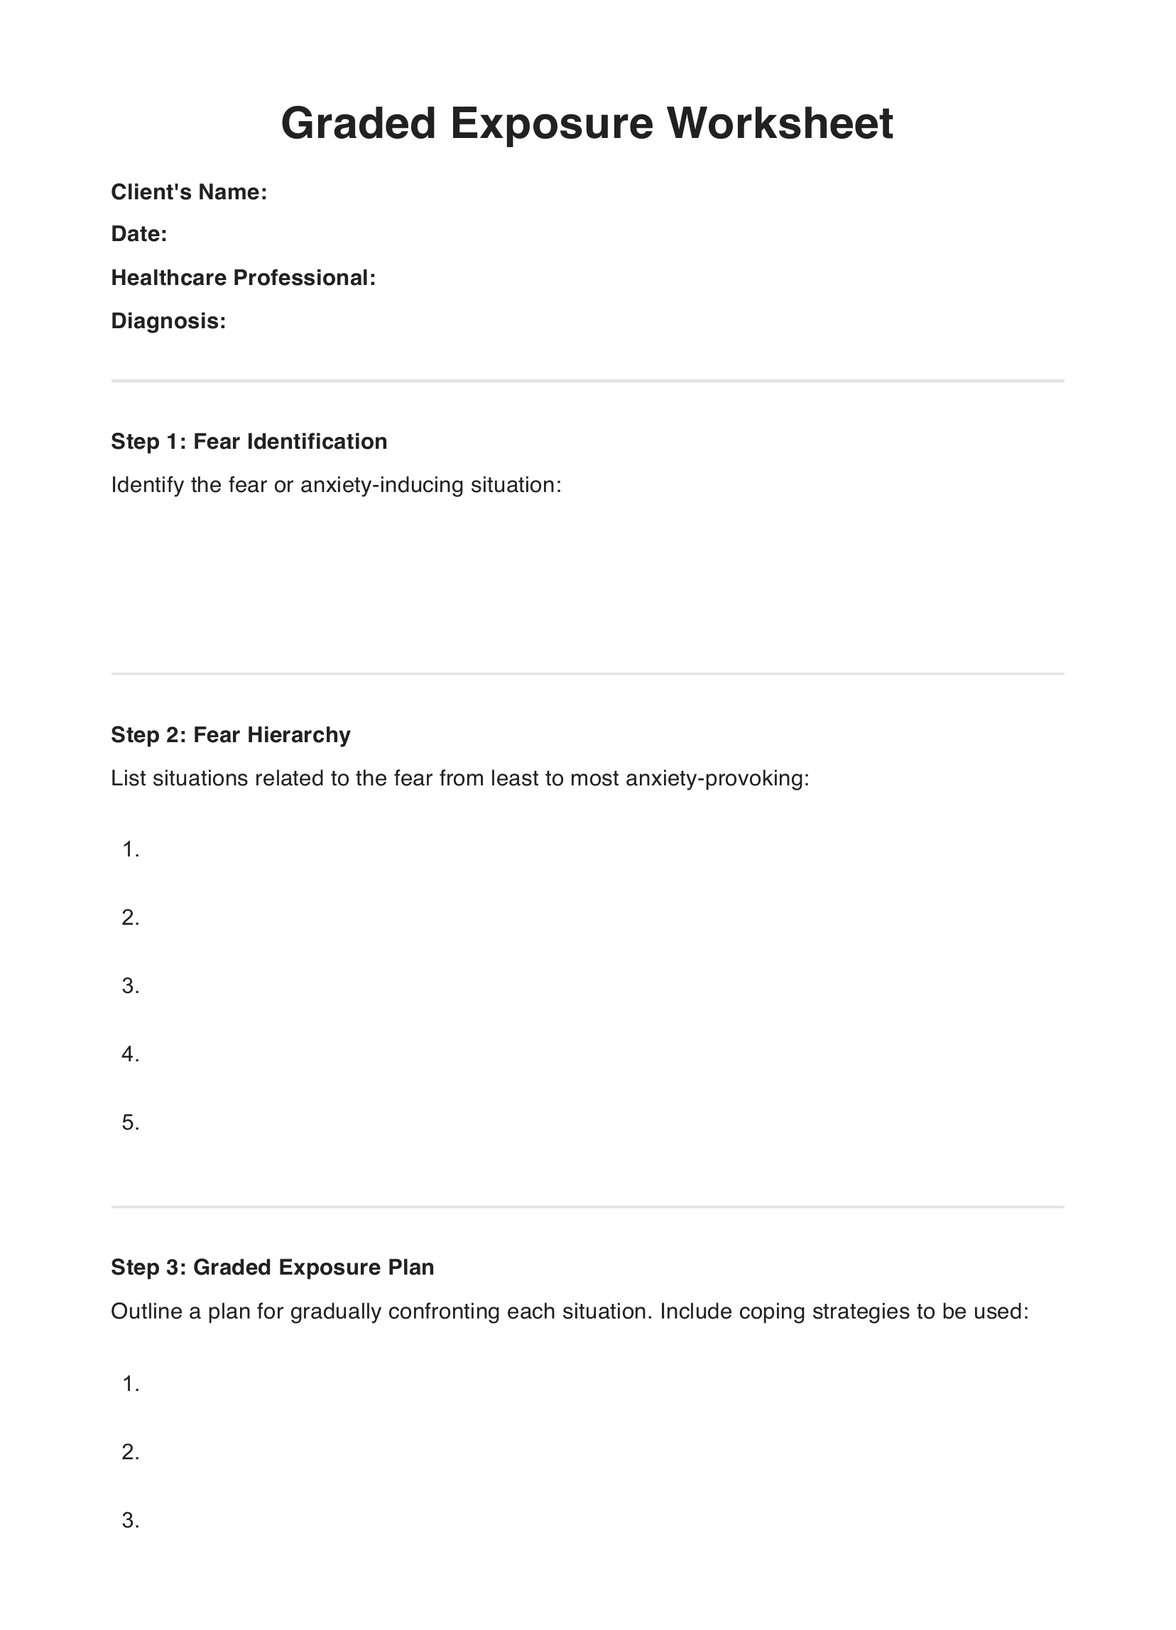 Graded Exposure Worksheet PDF Example